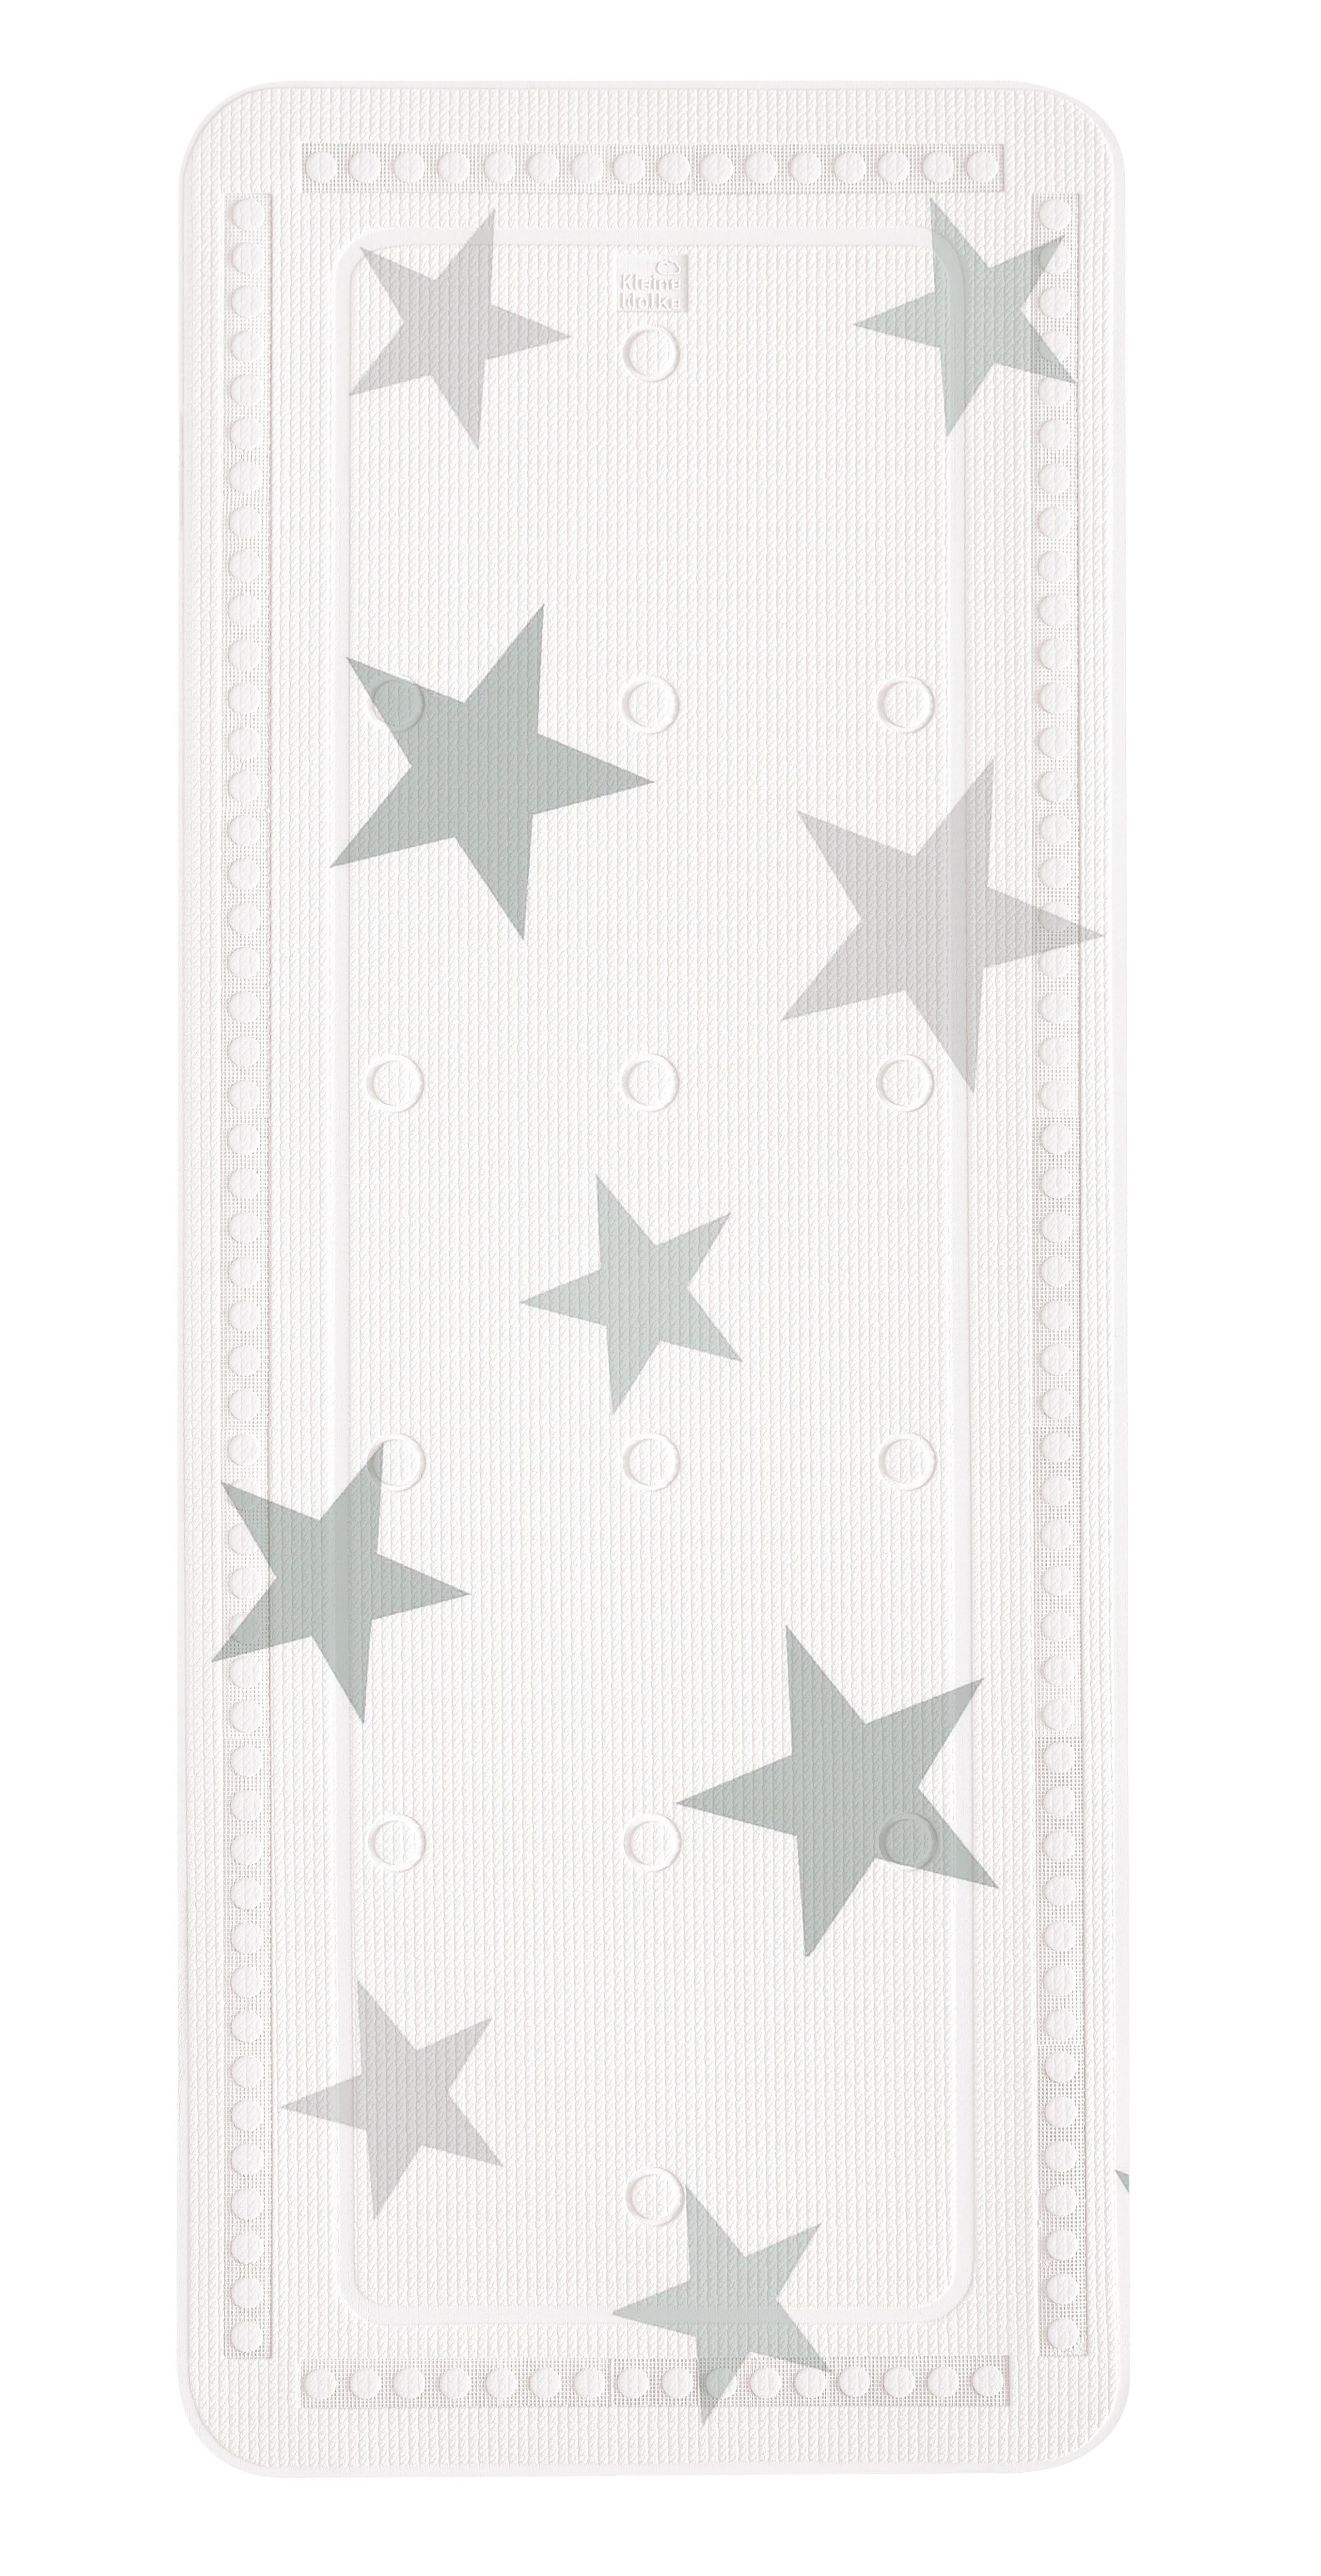 Duscheinlage, Stars Silbergrau, 55x 55 cm